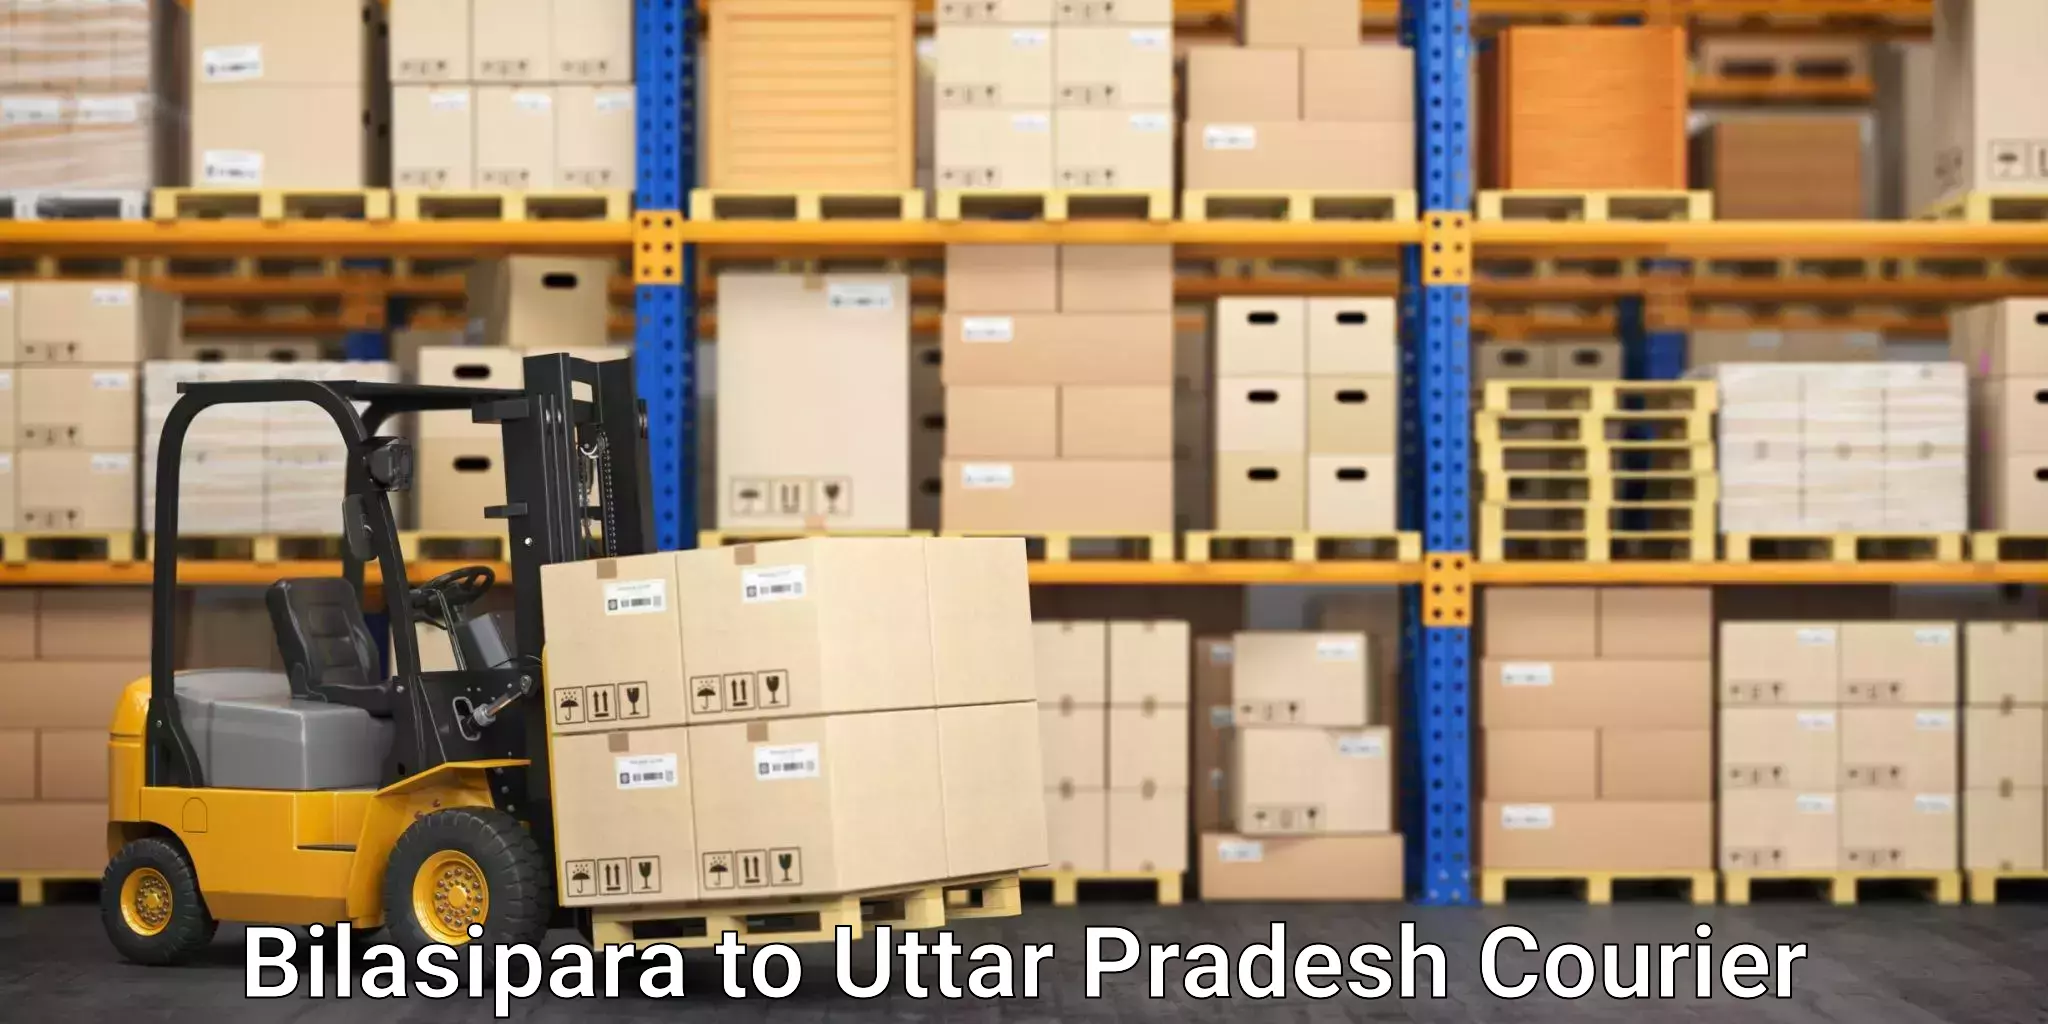 Premium courier services Bilasipara to Uttar Pradesh